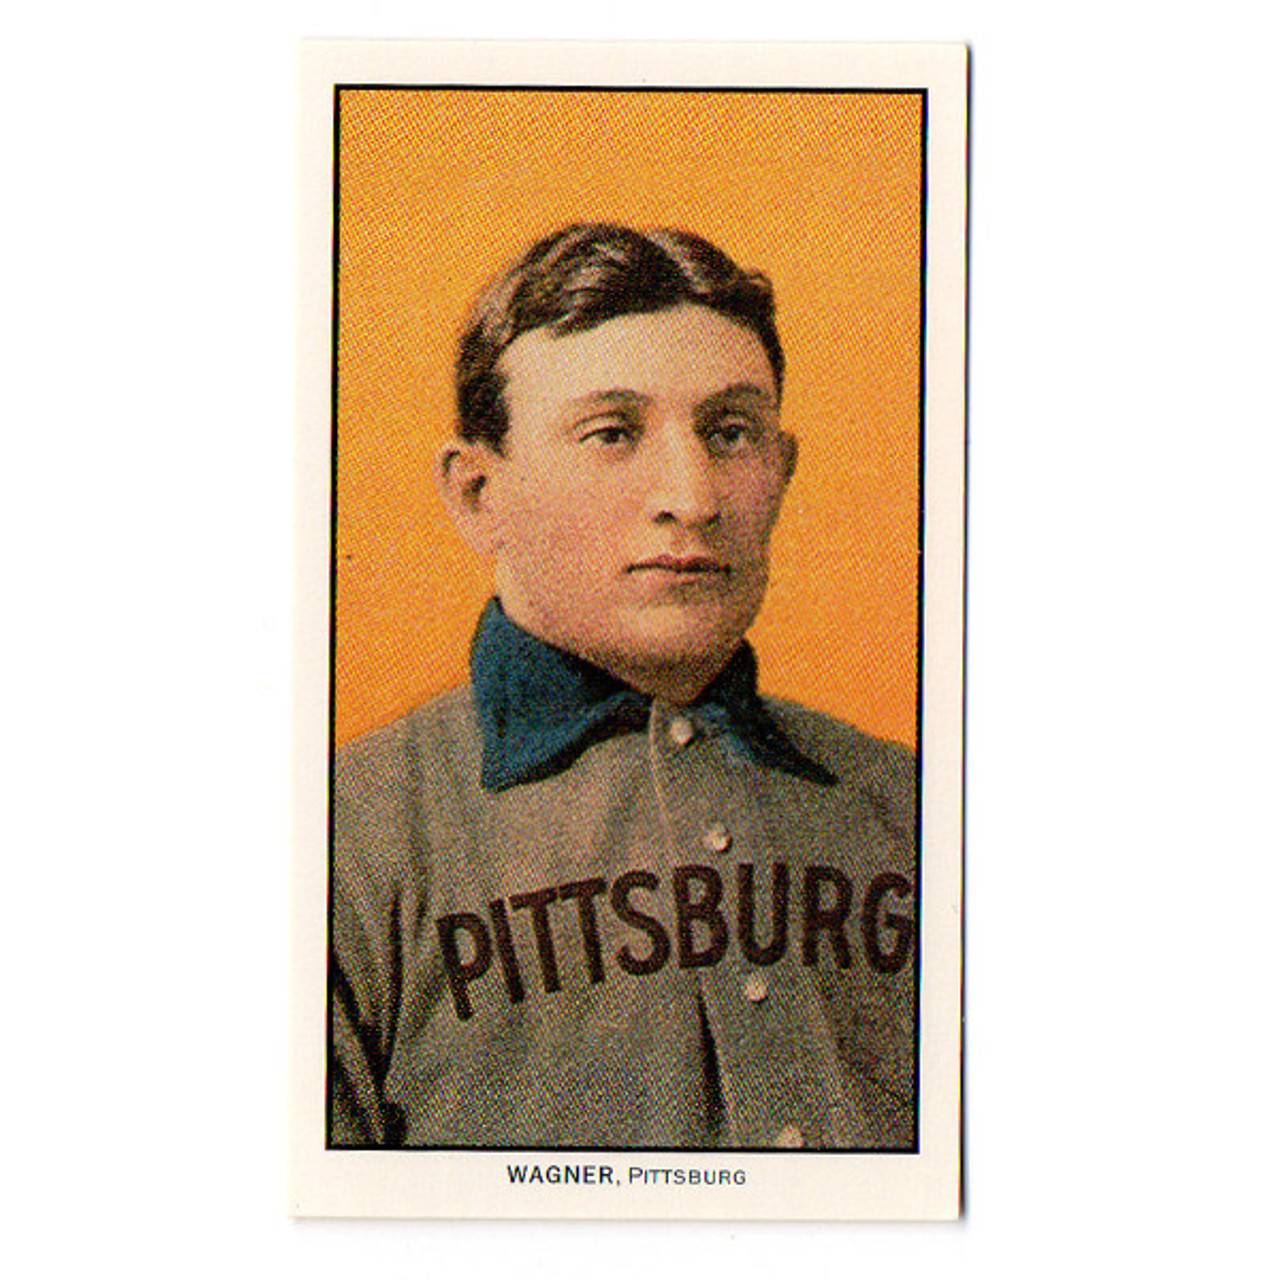 Secret Owner Of The Original, $750K Honus Wagner Baseball Card Revealed